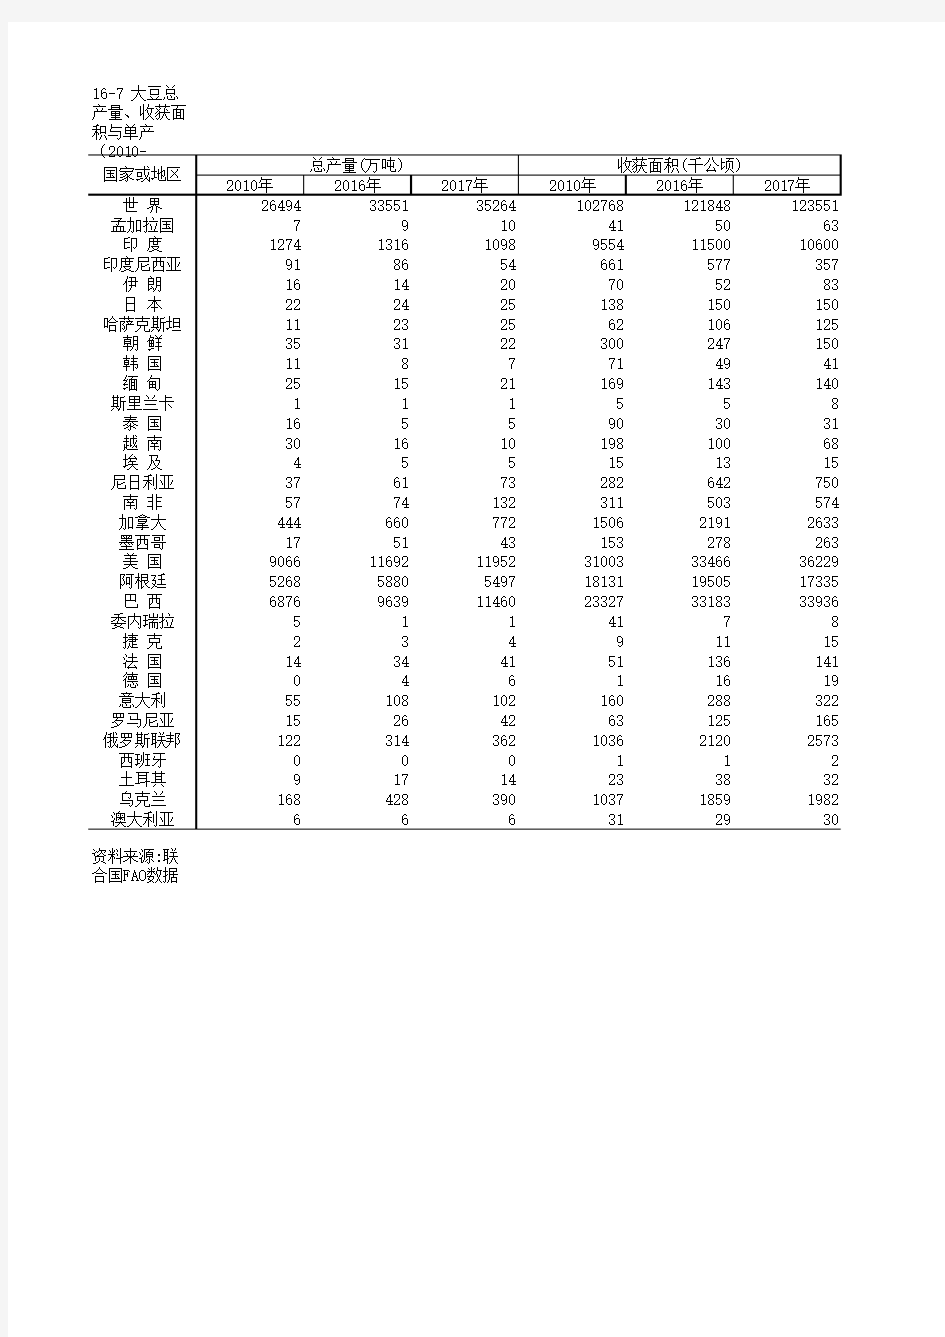 农村农业发展世界主要国家统计数据：16-7 大豆总产量、收获面积与单产(2010-2017)